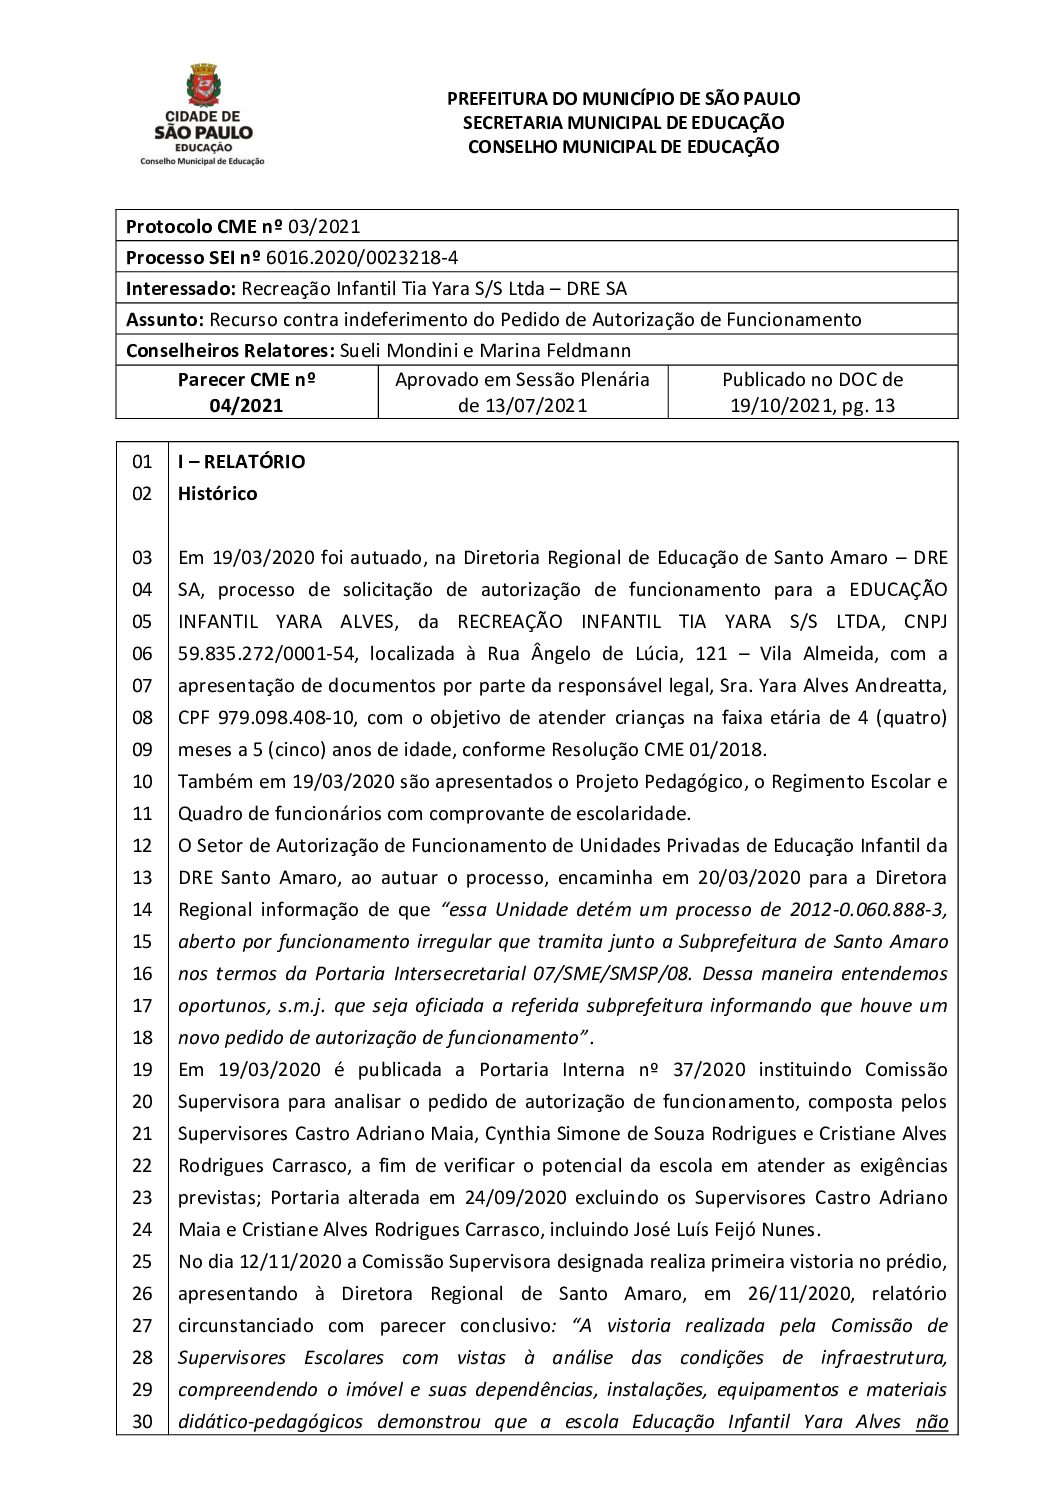 Parecer CME nº 04/2021 - Recreação Infantil Tia Yara S/S Ltda (DRE Santo Amaro) - Recurso contra indeferimento do Pedido de Autorização de Funcionamento  